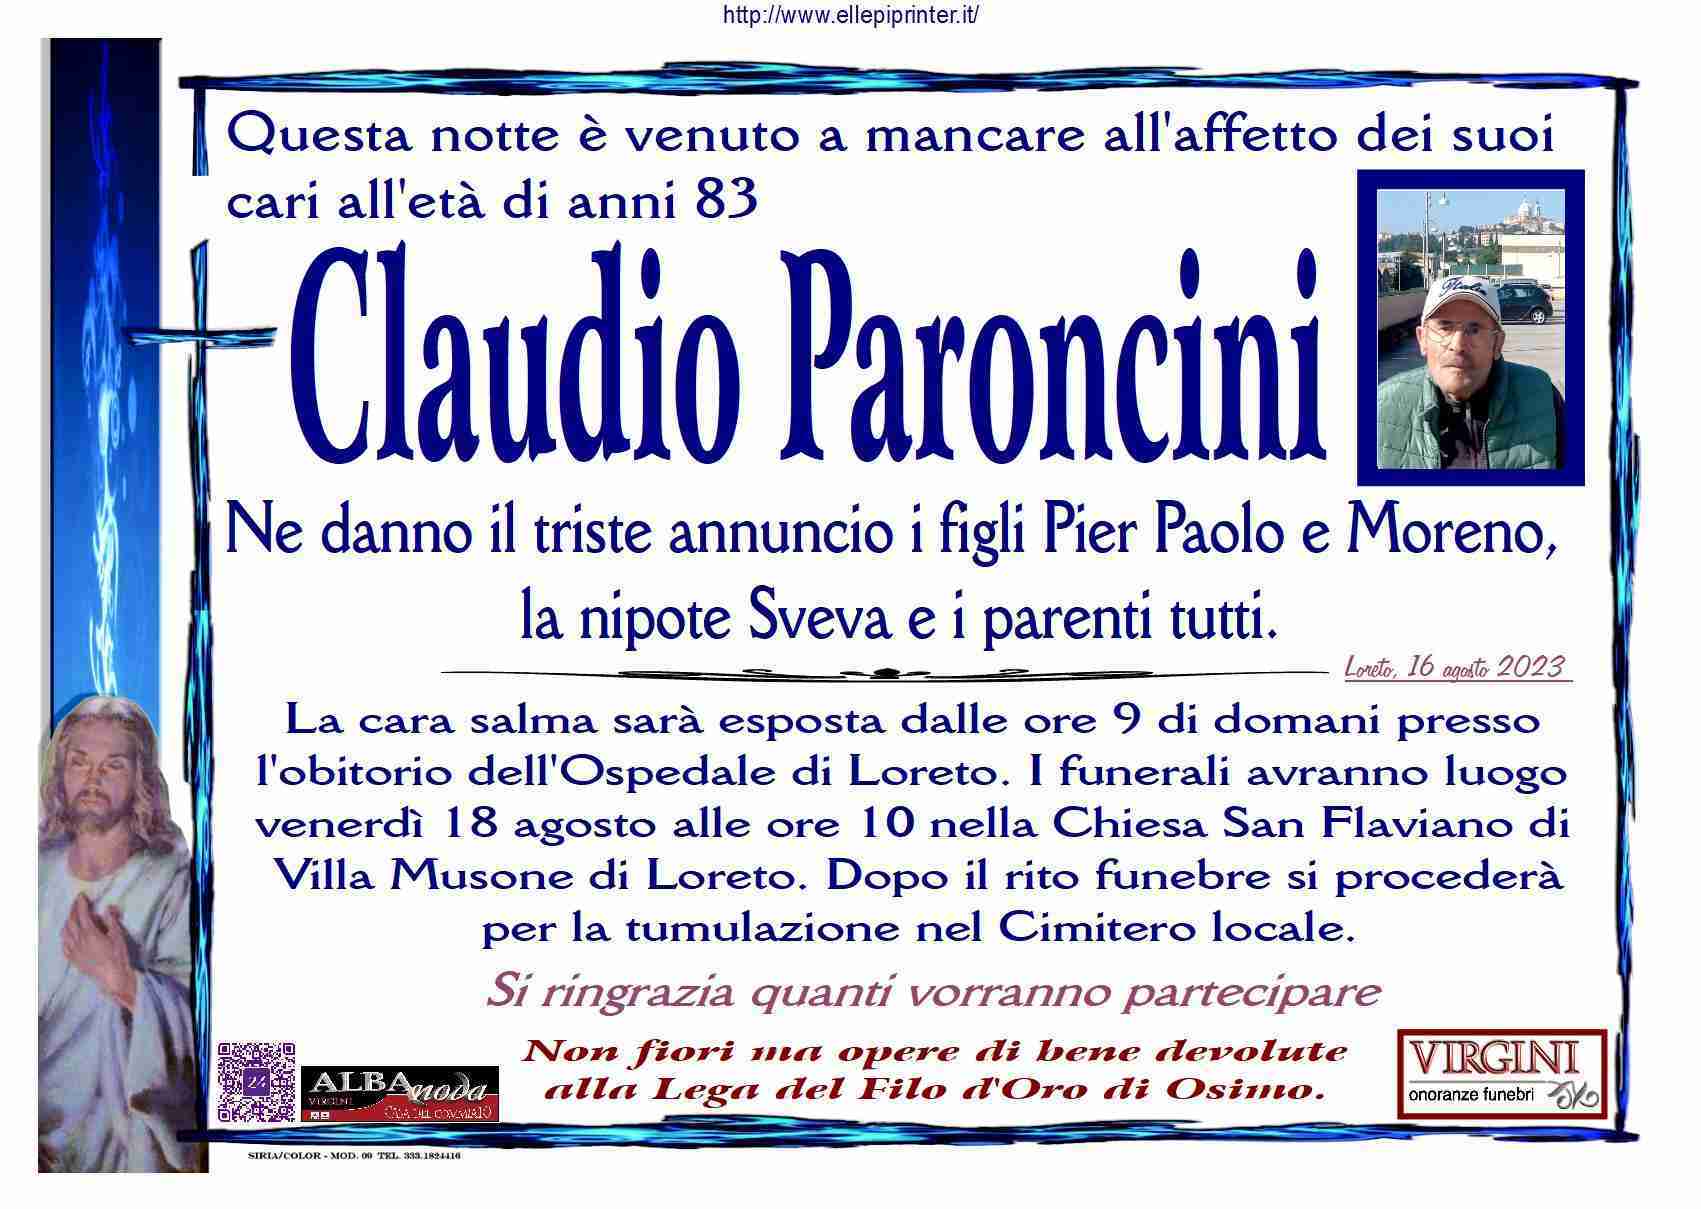 Claudio Paroncini